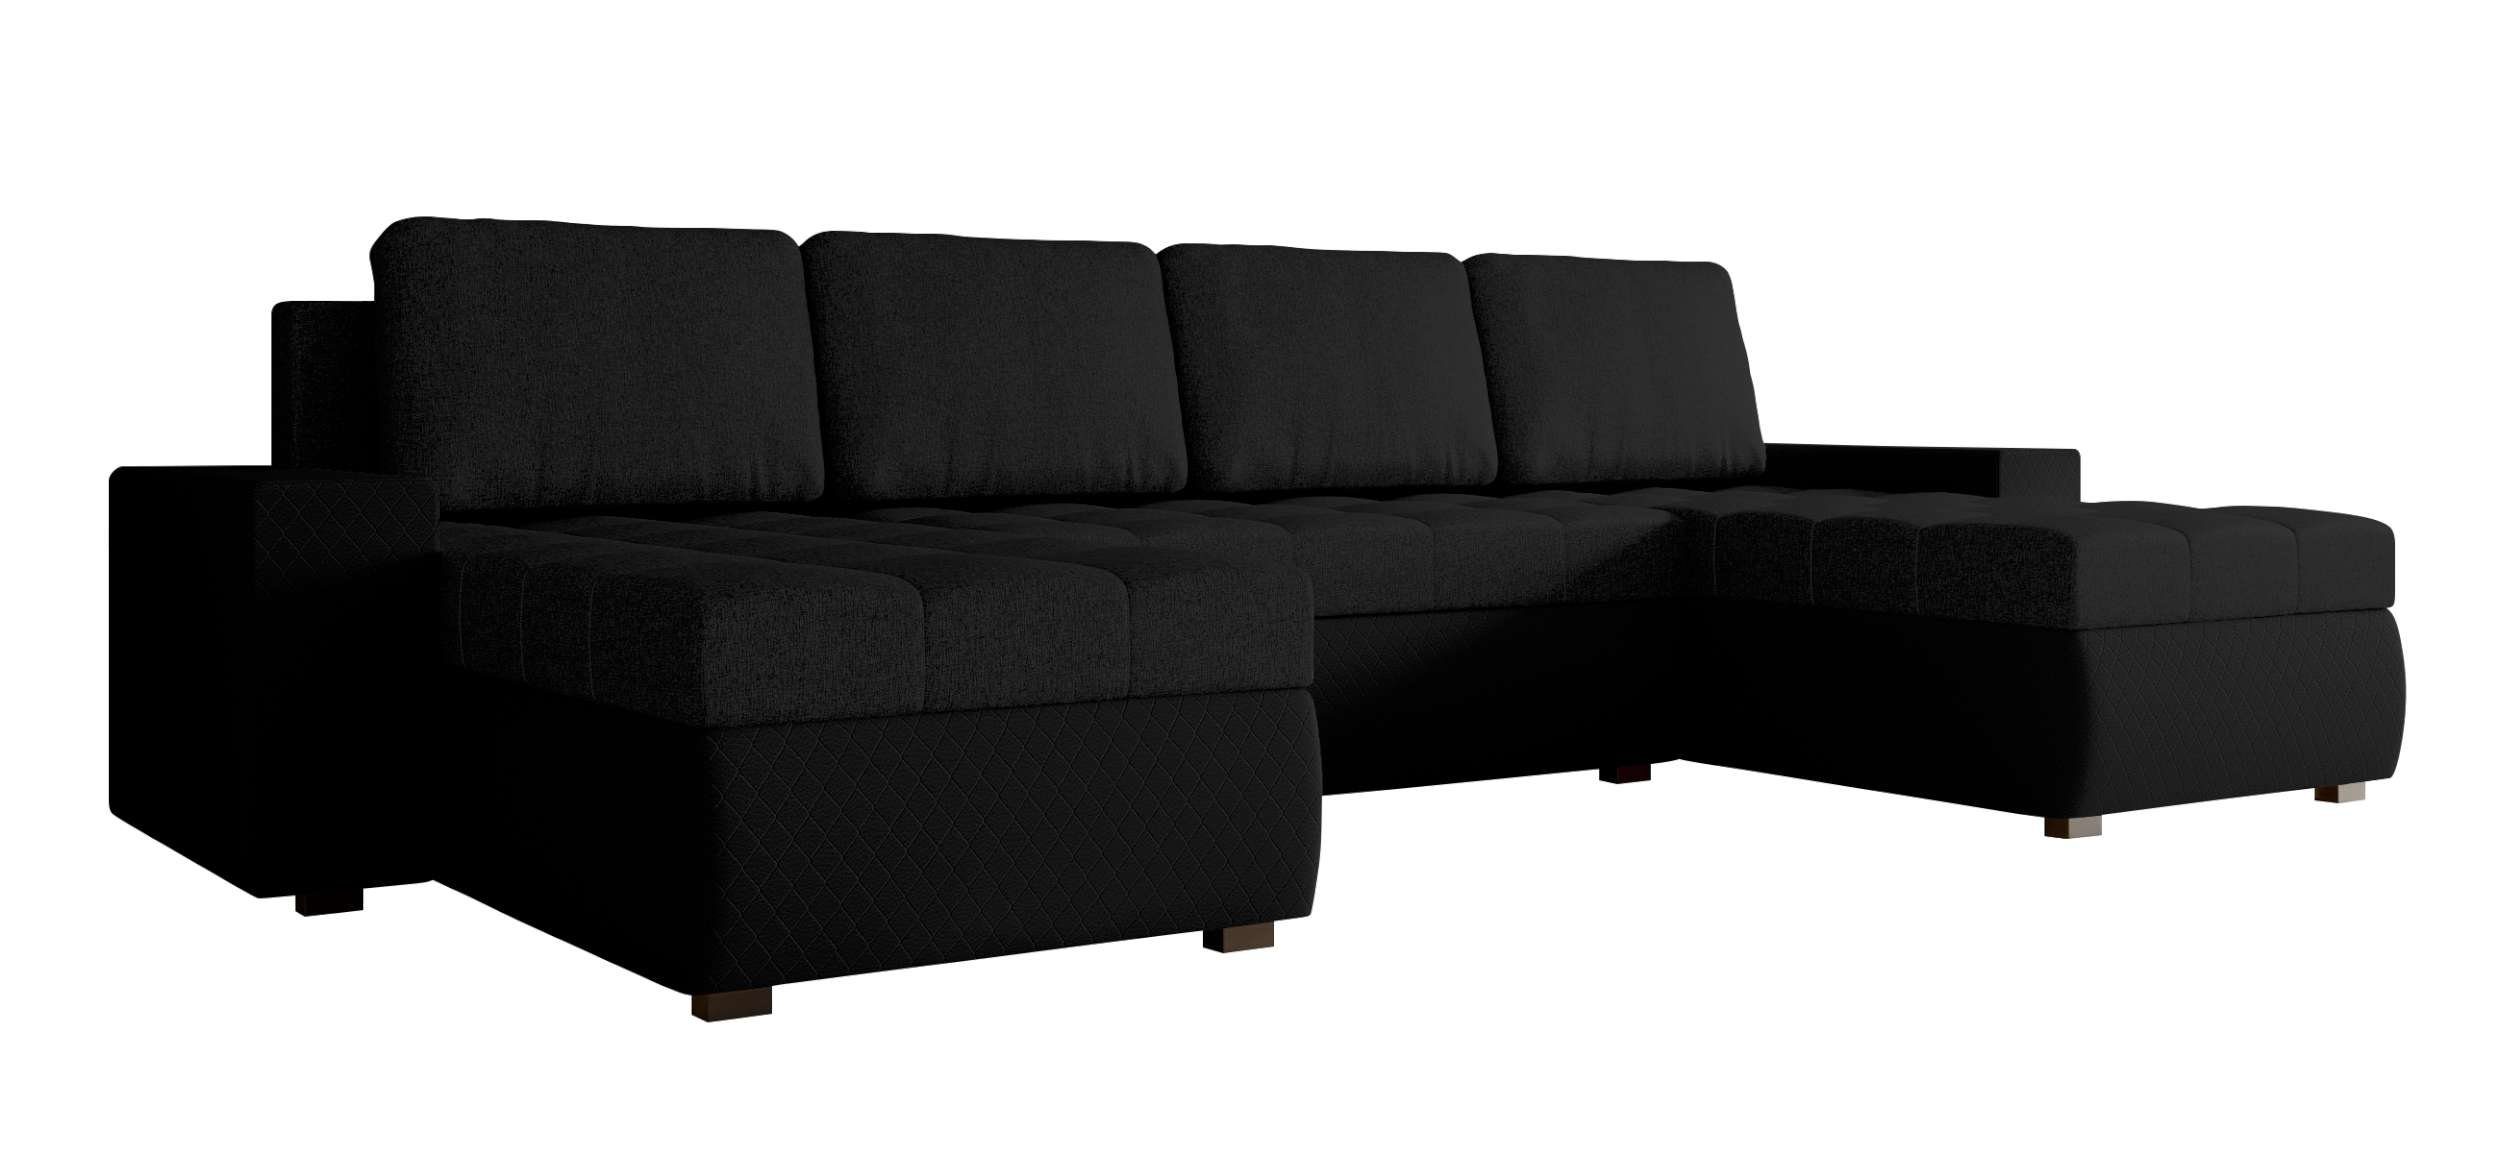 Stylefy Wohnlandschaft mit Eckcouch, Bettfunktion, Amelia, Design Bettkasten, Sitzkomfort, Modern U-Form, mit Sofa